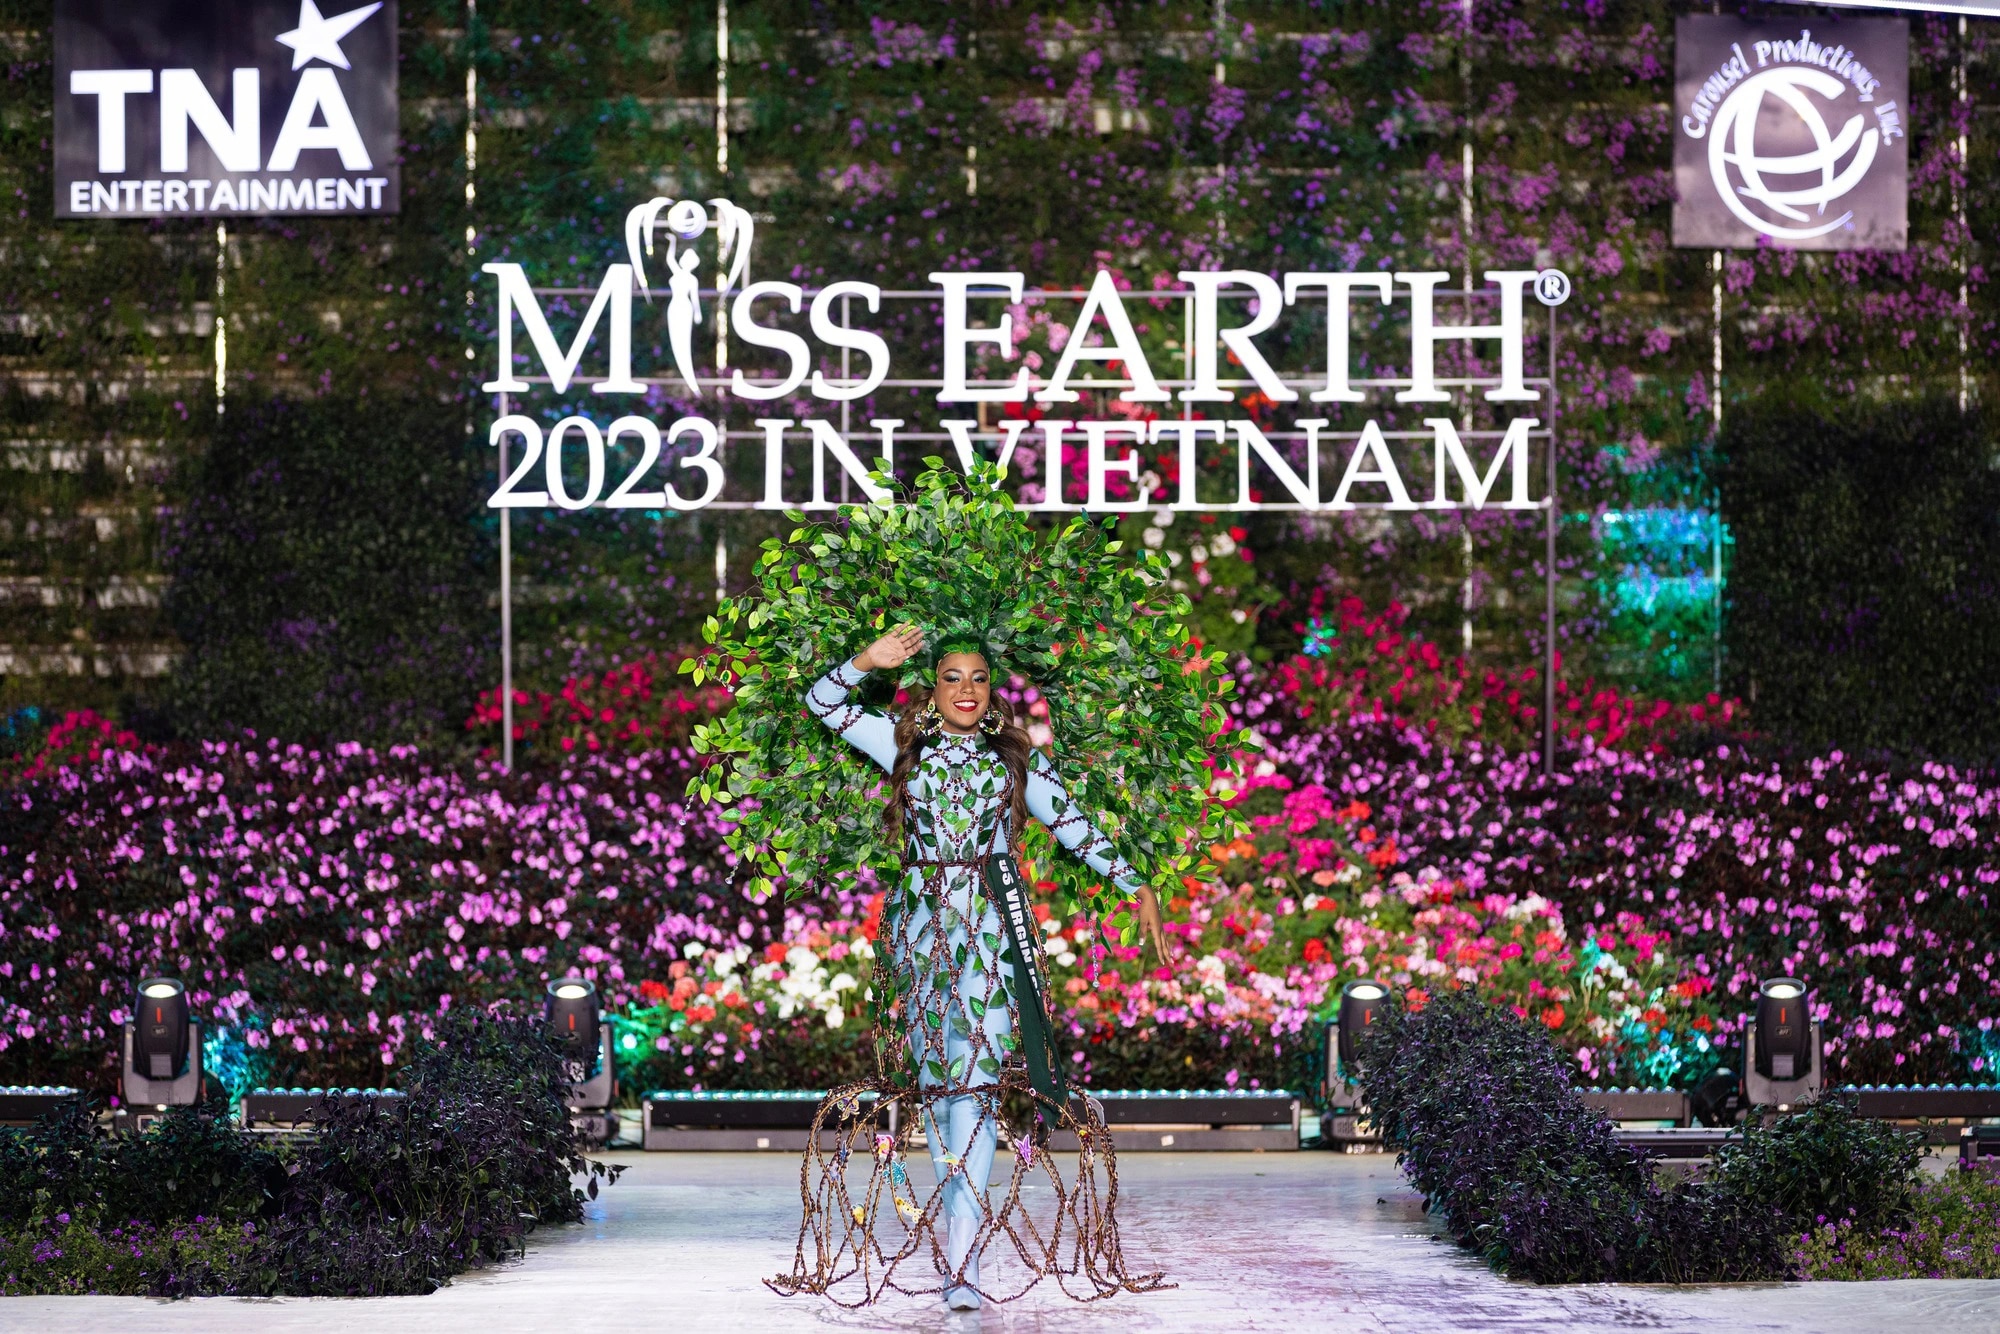 Bán kết Miss Earth 2023 màn trình Trang phục Dân tộc bùng nổ hình ảnh cỏ hoa, muông thú - Ảnh 6.